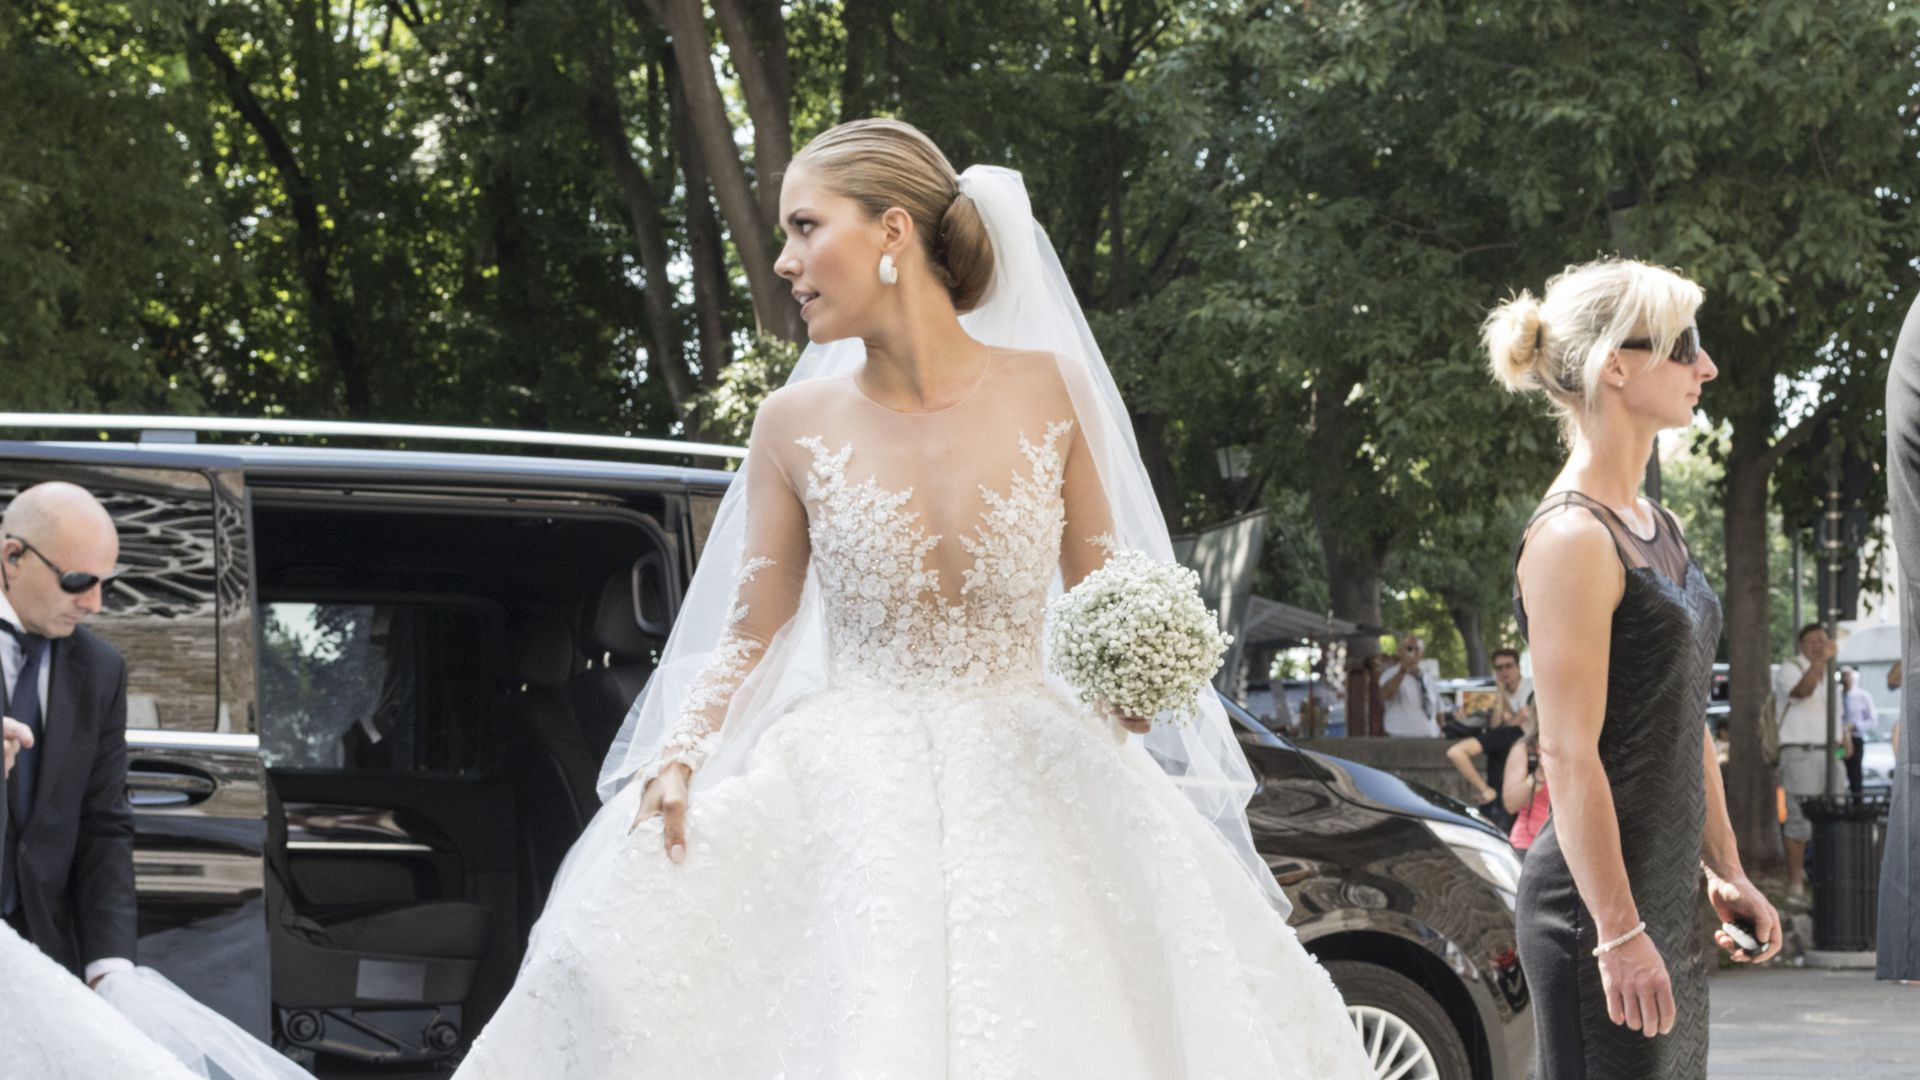 Victoria Swarovski Hochzeitskleid
 Weißer Traum ER steckt hinter Vicky Swarovskis Brautkleid